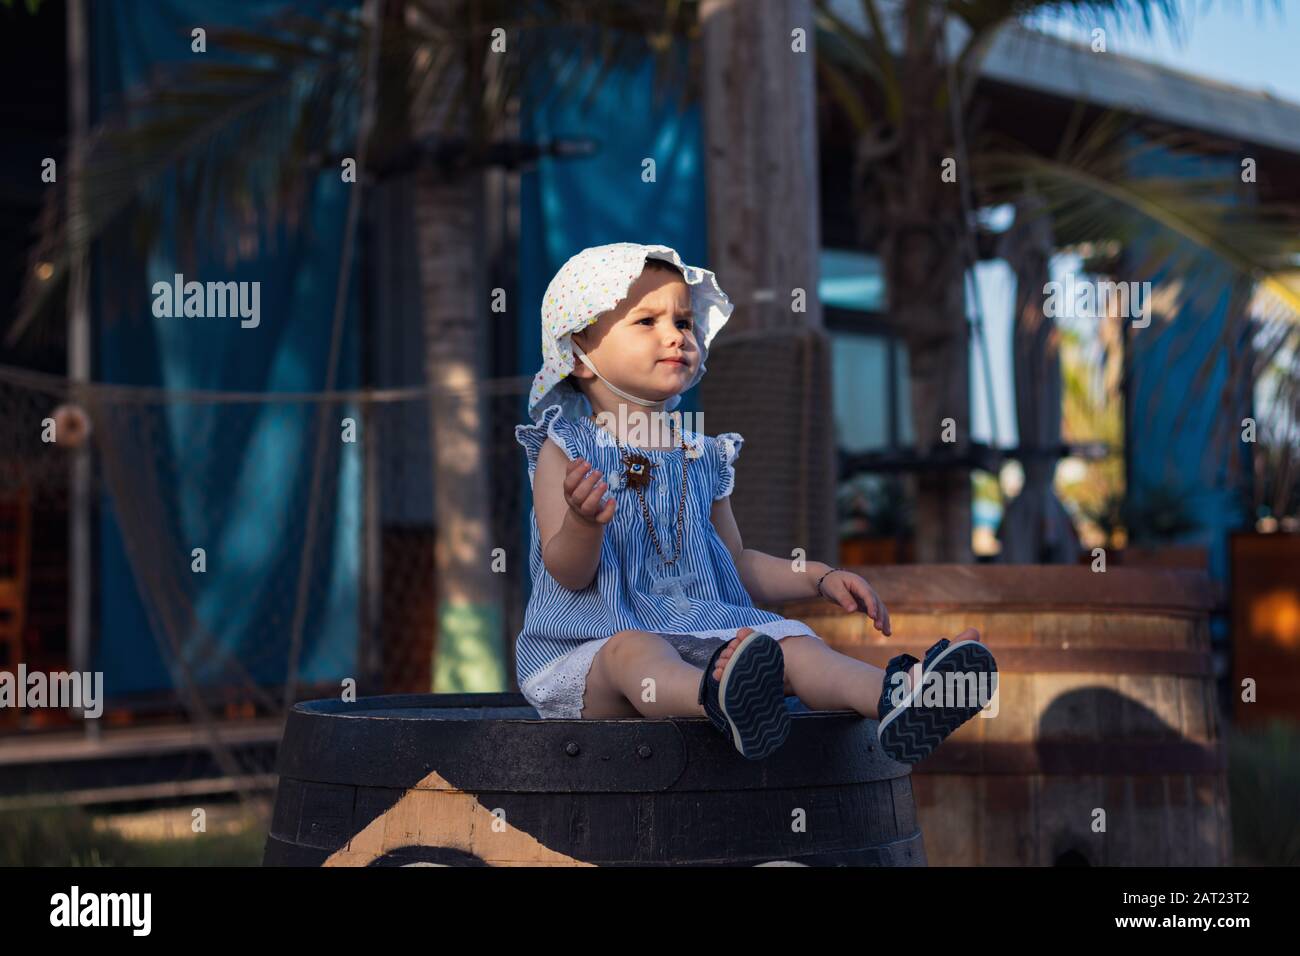 Une jolie petite fille assise sur un tonneau en bois à lamer, Dubaï, par une belle journée ensoleillée. Banque D'Images